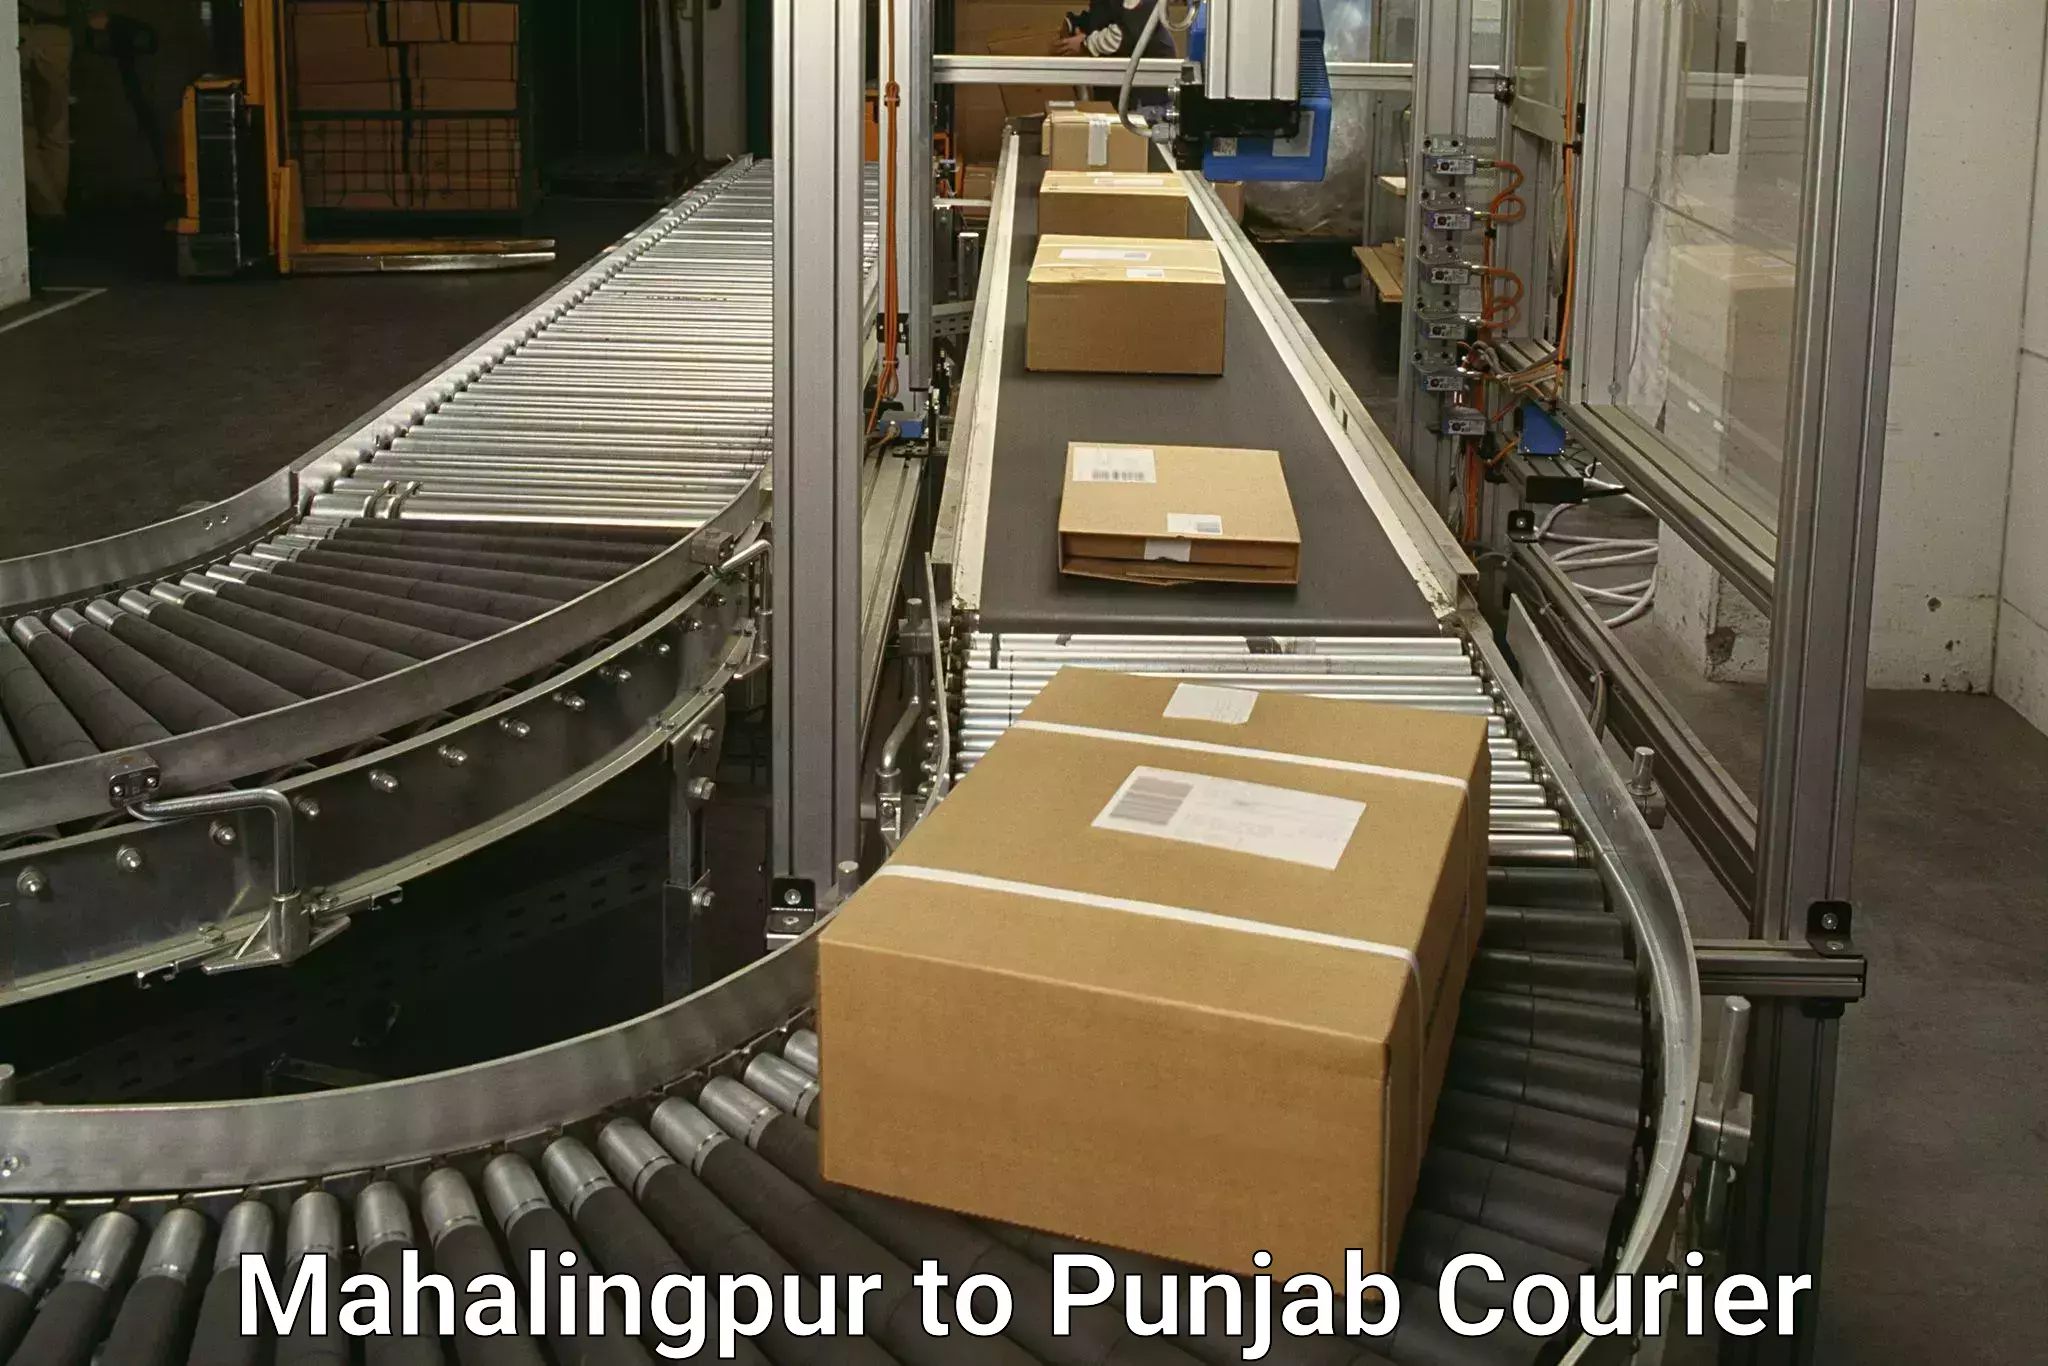 Express logistics service Mahalingpur to Nangal